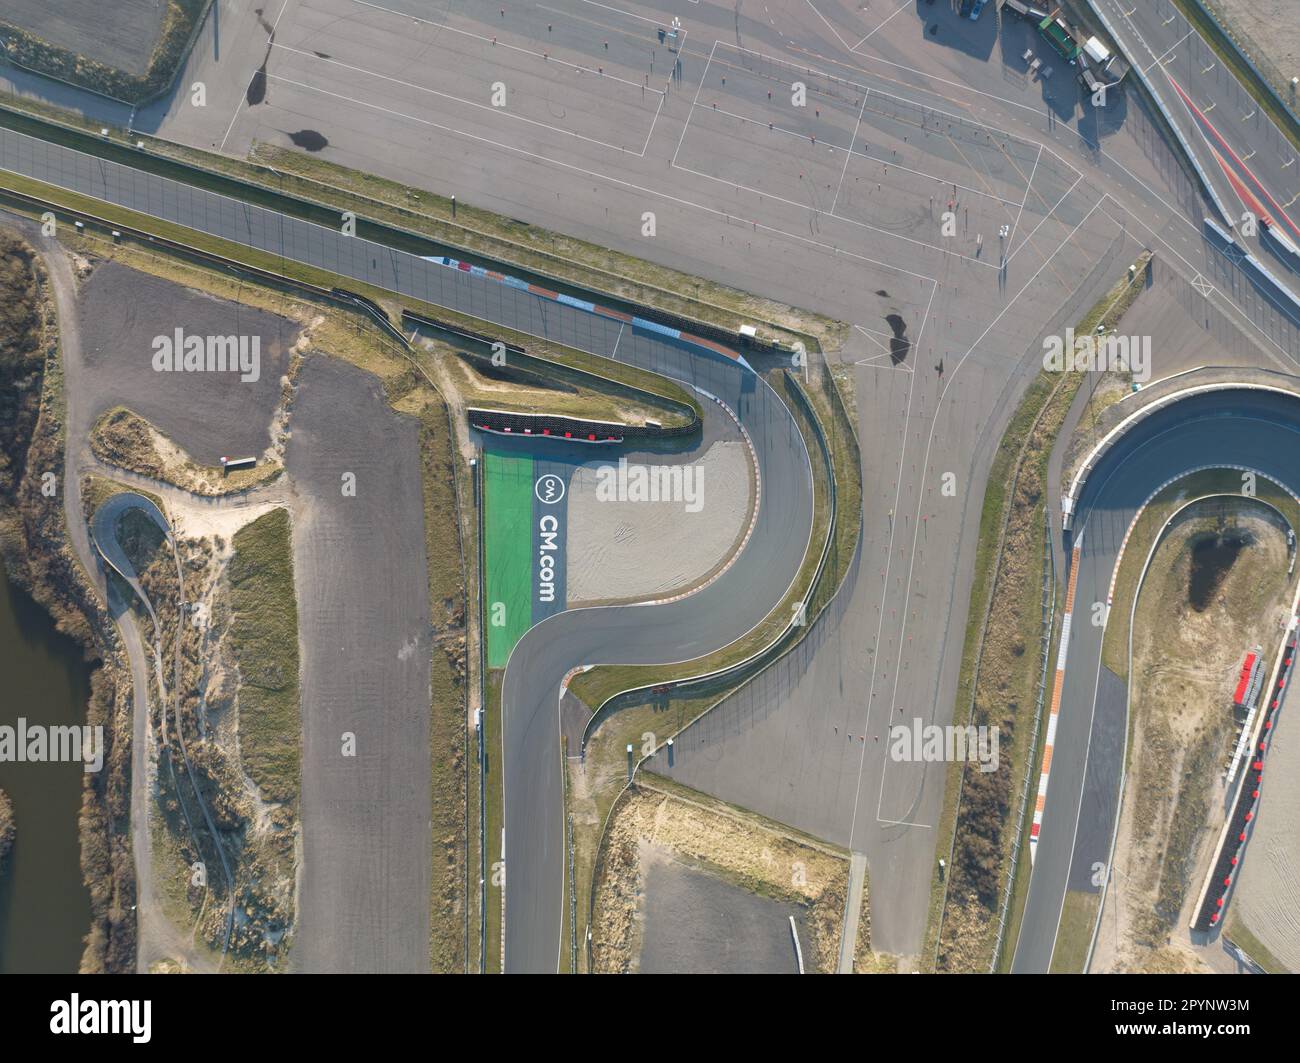 Riprese con droni che catturano le curve e le curve dell'iconica pista di  Zandvoort dall'alto in una vista dall'alto verso il basso Foto stock - Alamy